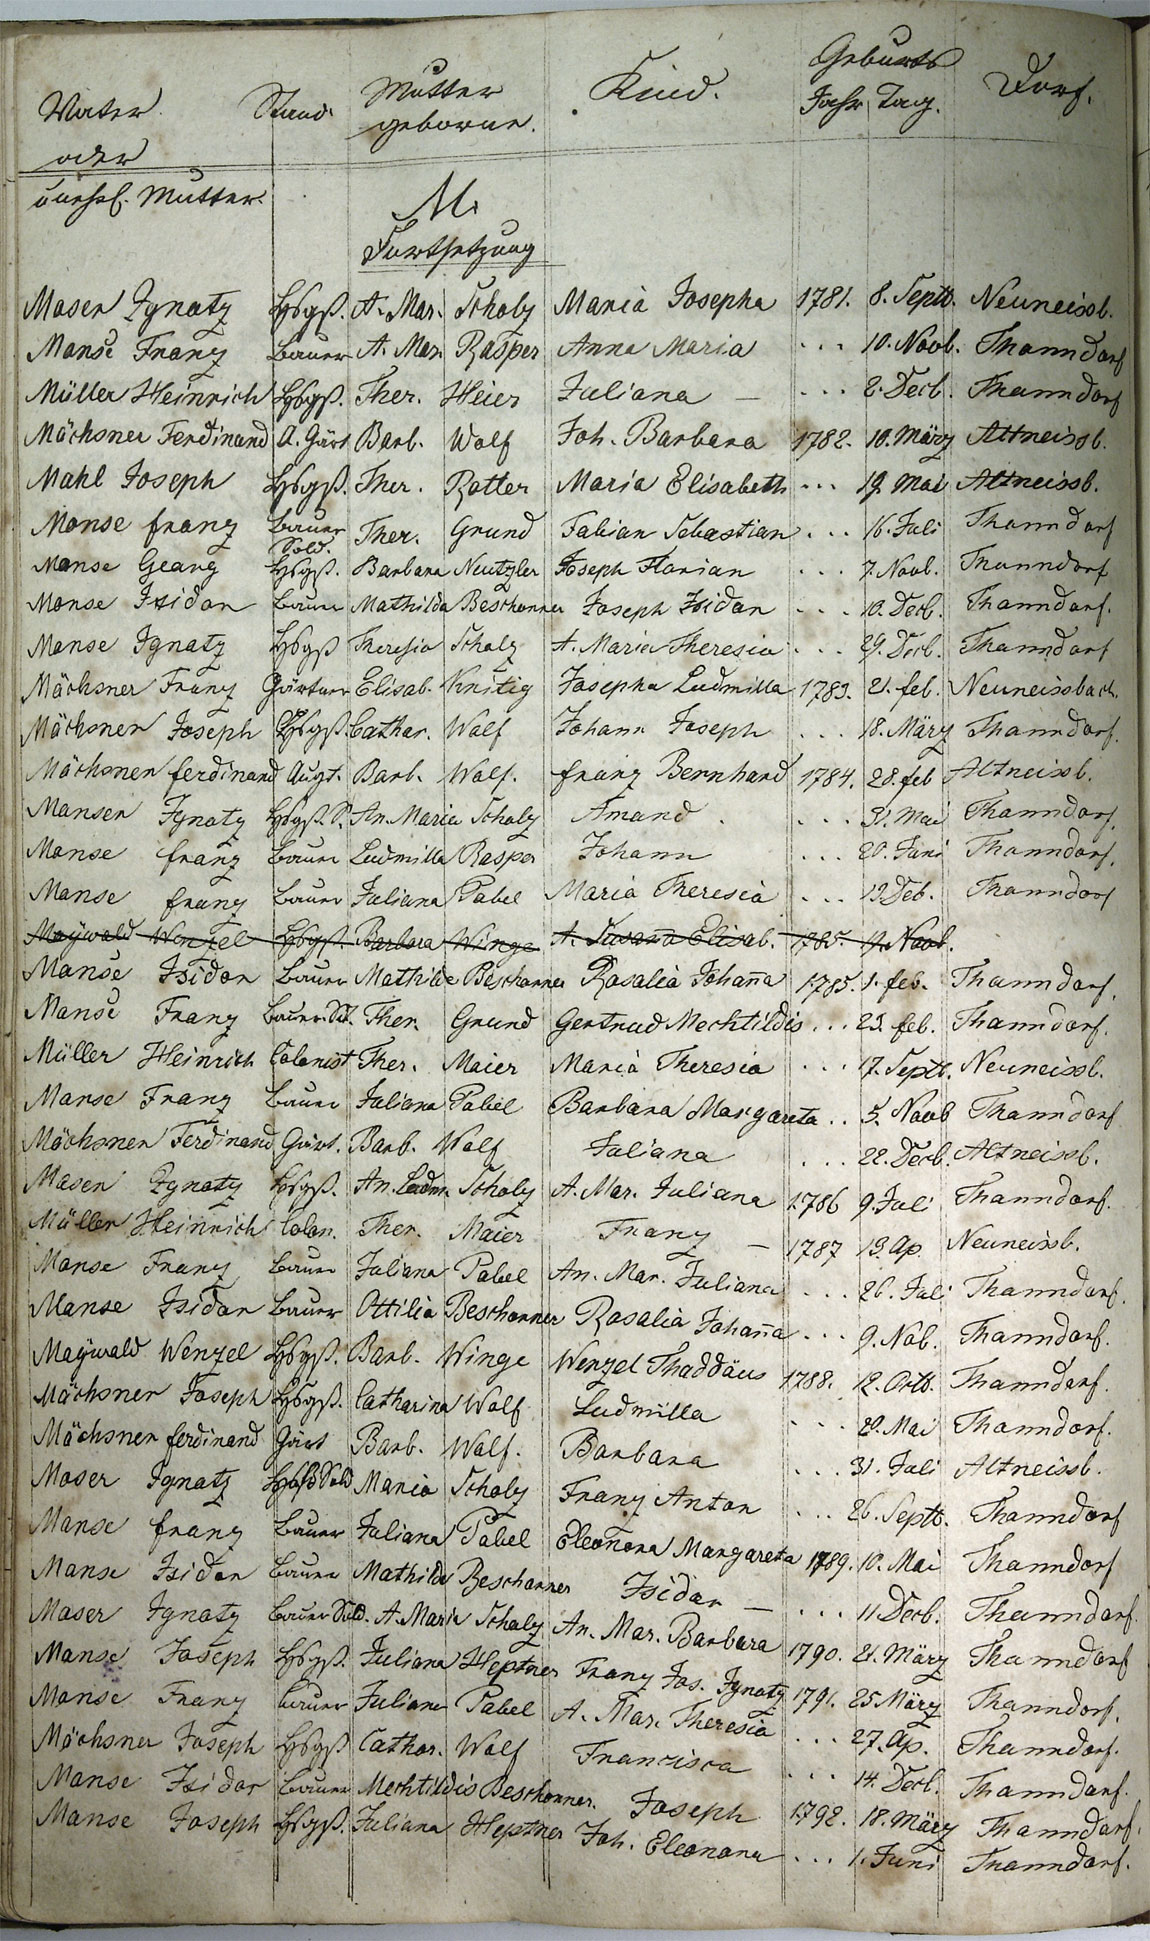 Taufregister 1770 - 1889 Seite 96